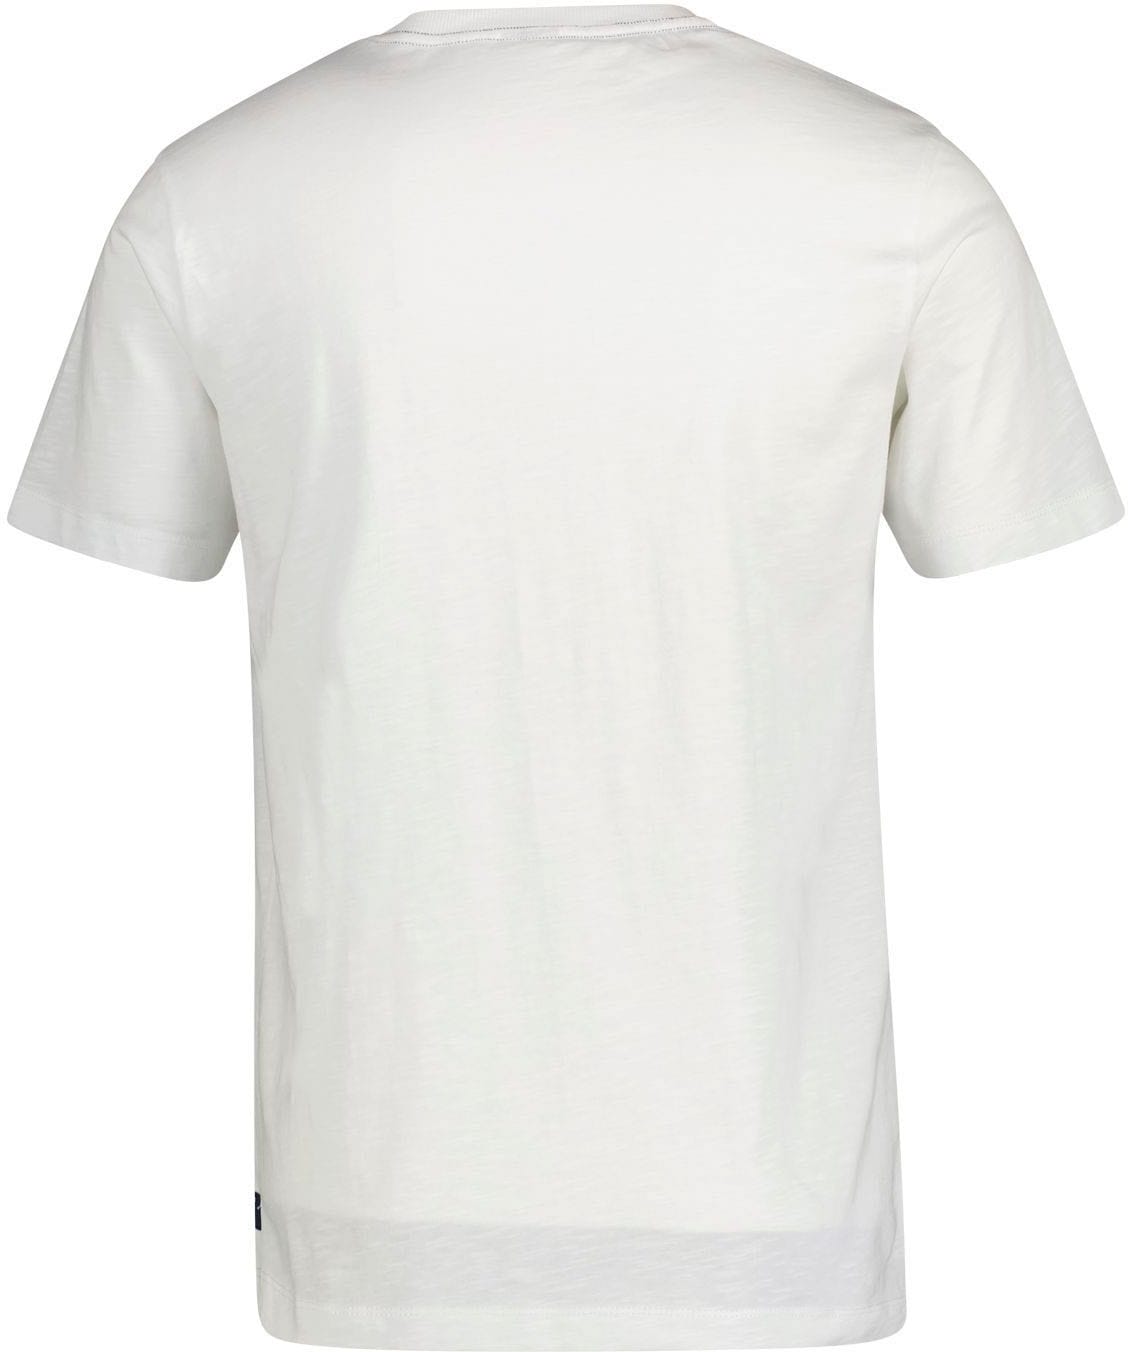 LERROS T-Shirt, in hochwertiger Jerseyqualität